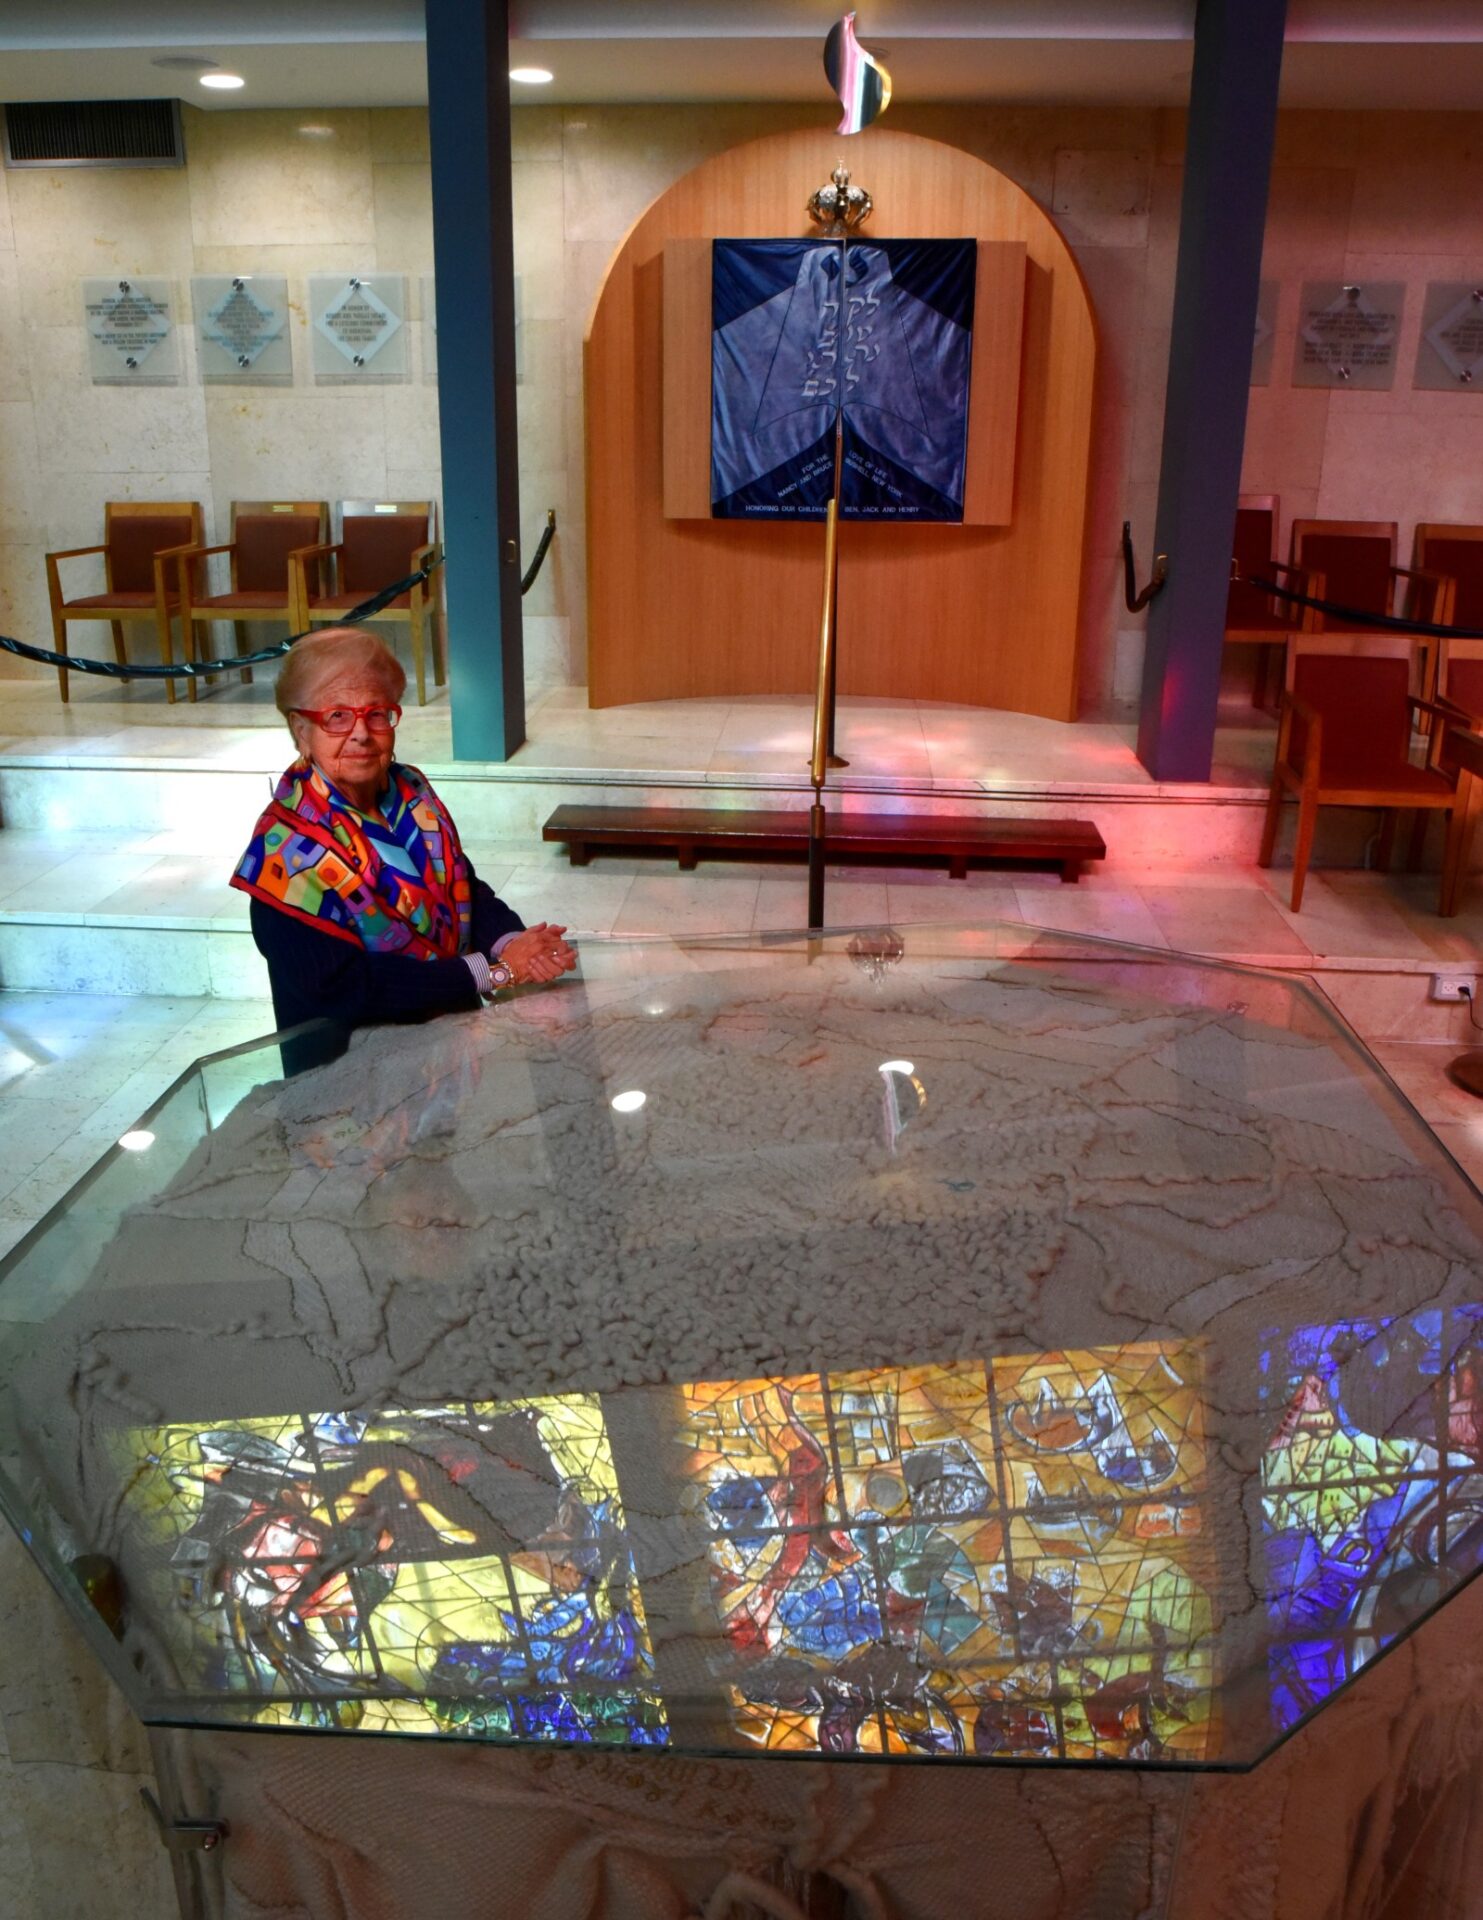 Barbara Goldstein, subdirectora ejecutiva de Hadassah, en la sinagoga Abbell. En el púlpito se ve un reflejo de las ventanas de Chagall. Foto: David Harris/todos los derechos reservados a Hadassah